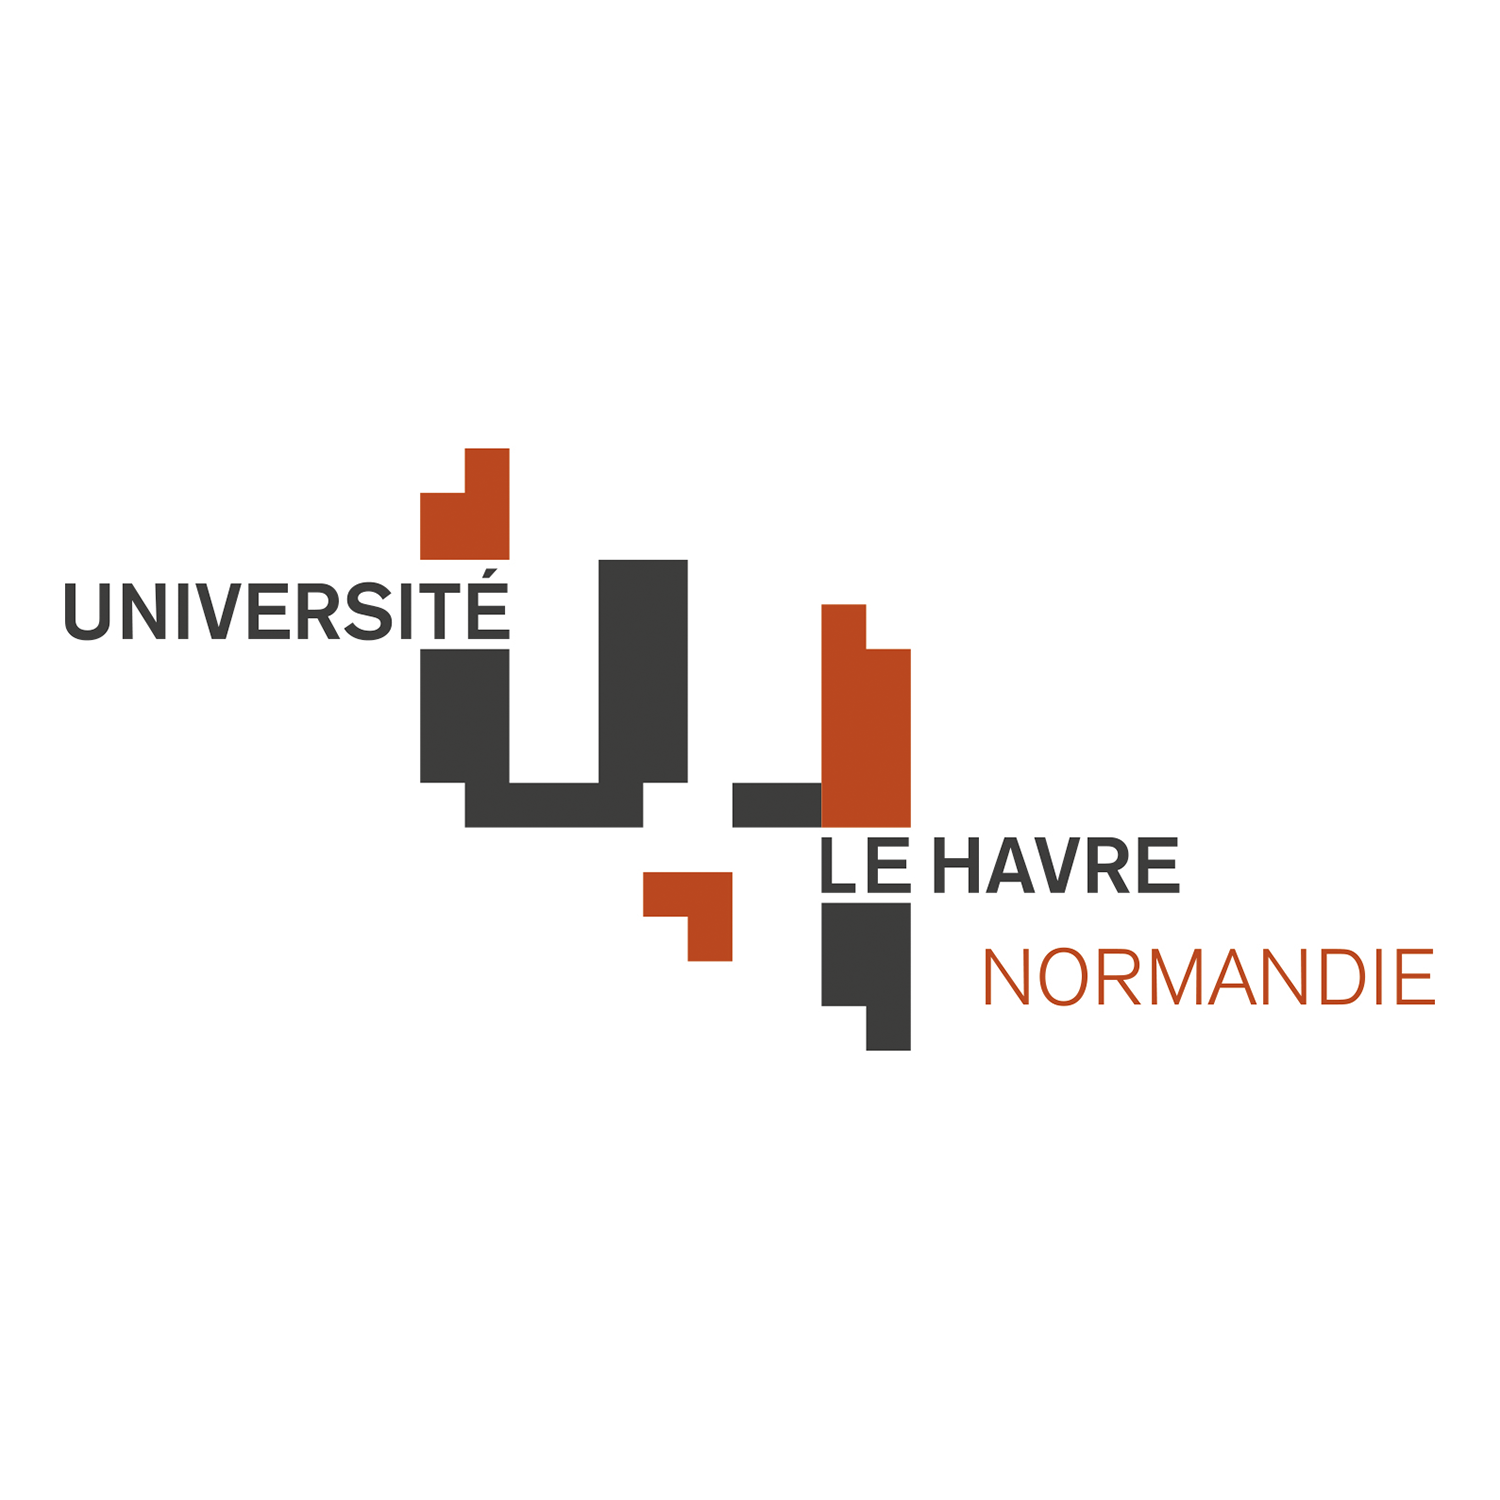 Université Le havre Normandie